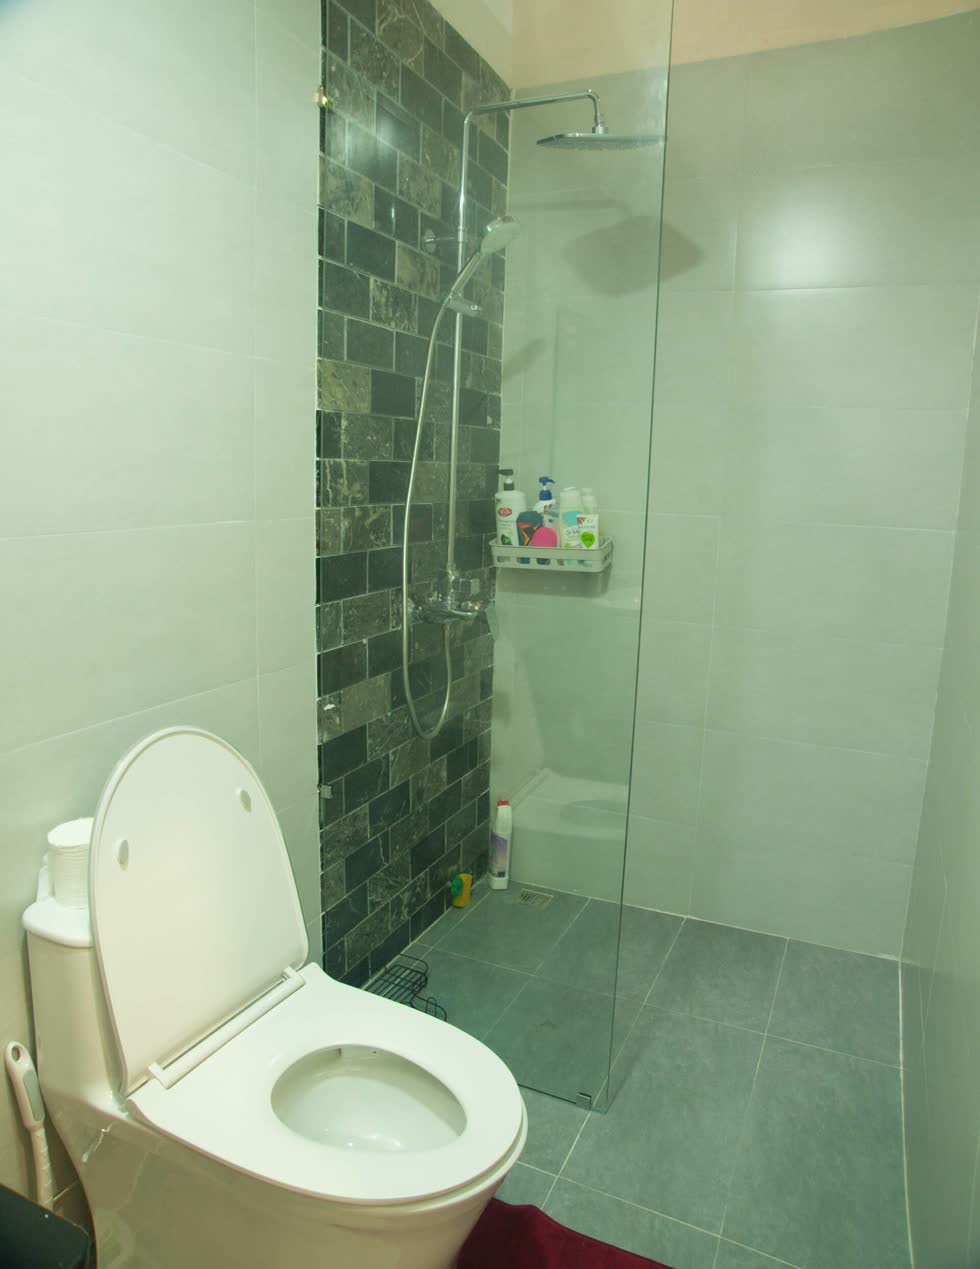 Nhà tắm được thiết kế phân cách khu vực ướt và khô riêng biệt - một trong những cách thiết kế được nhiều gia đình lựa chọn hiện nay vì tính hữu ích và đảm bảo vệ sinh.